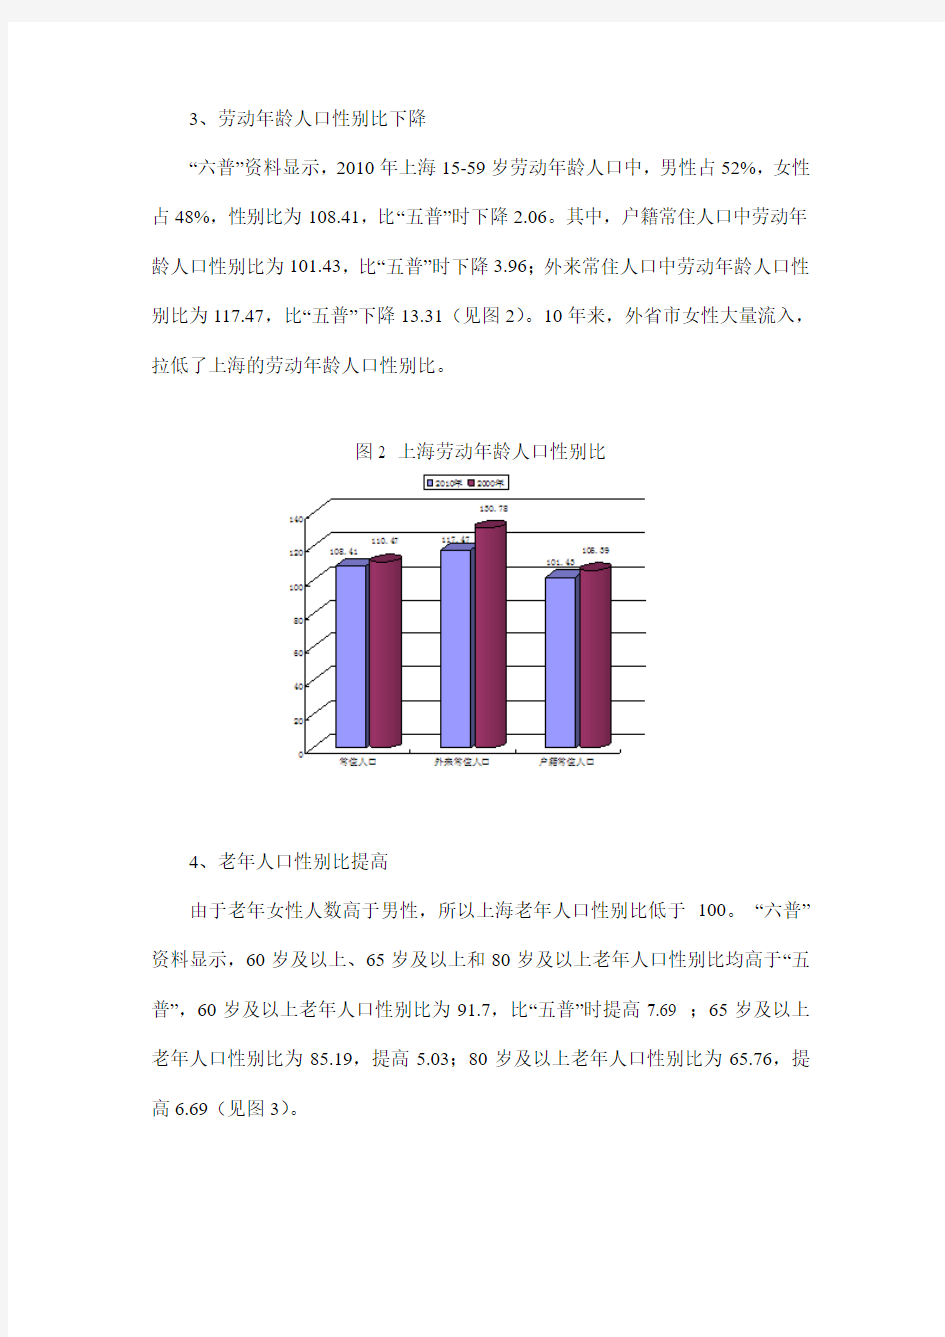 上海常住人口性别年龄结构变化特征分析-上海社会科学院